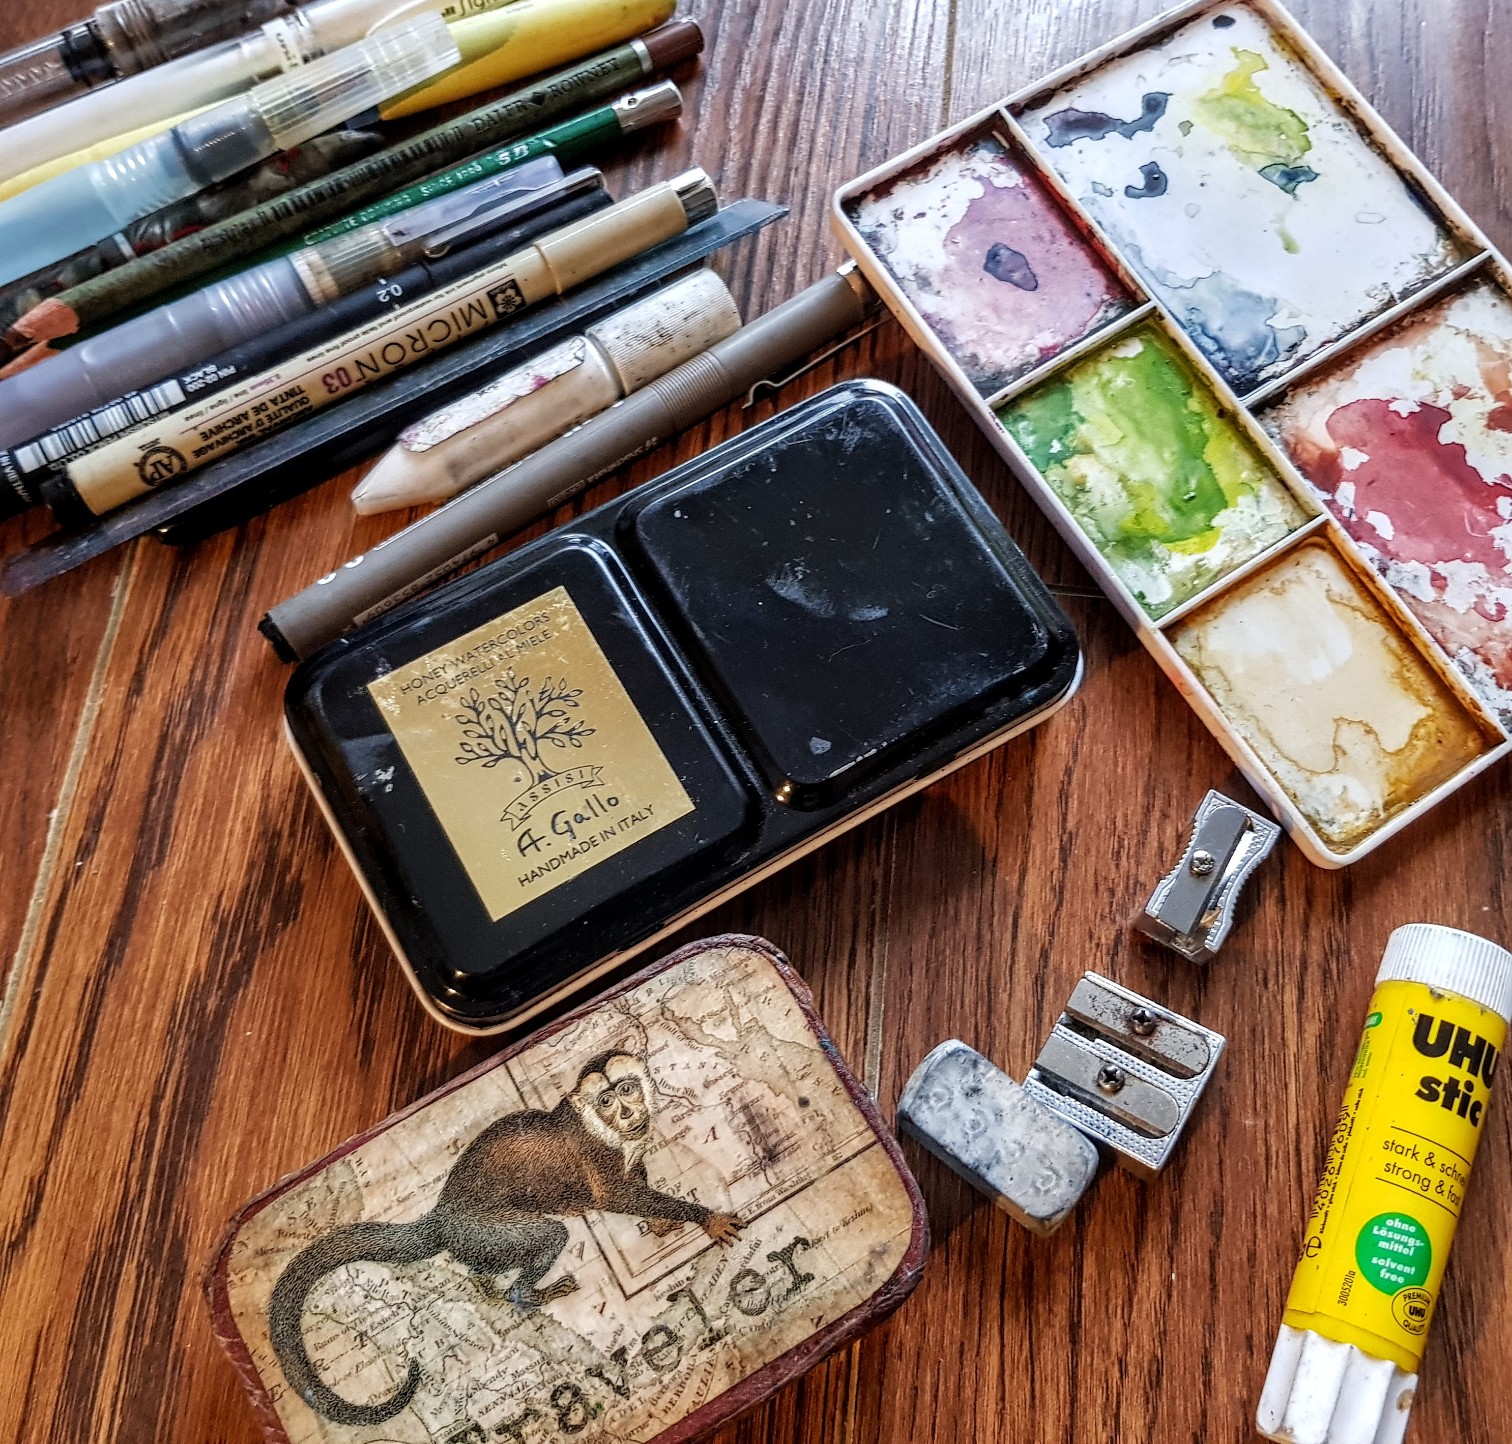 A Nature Art Journal: My portable art kit